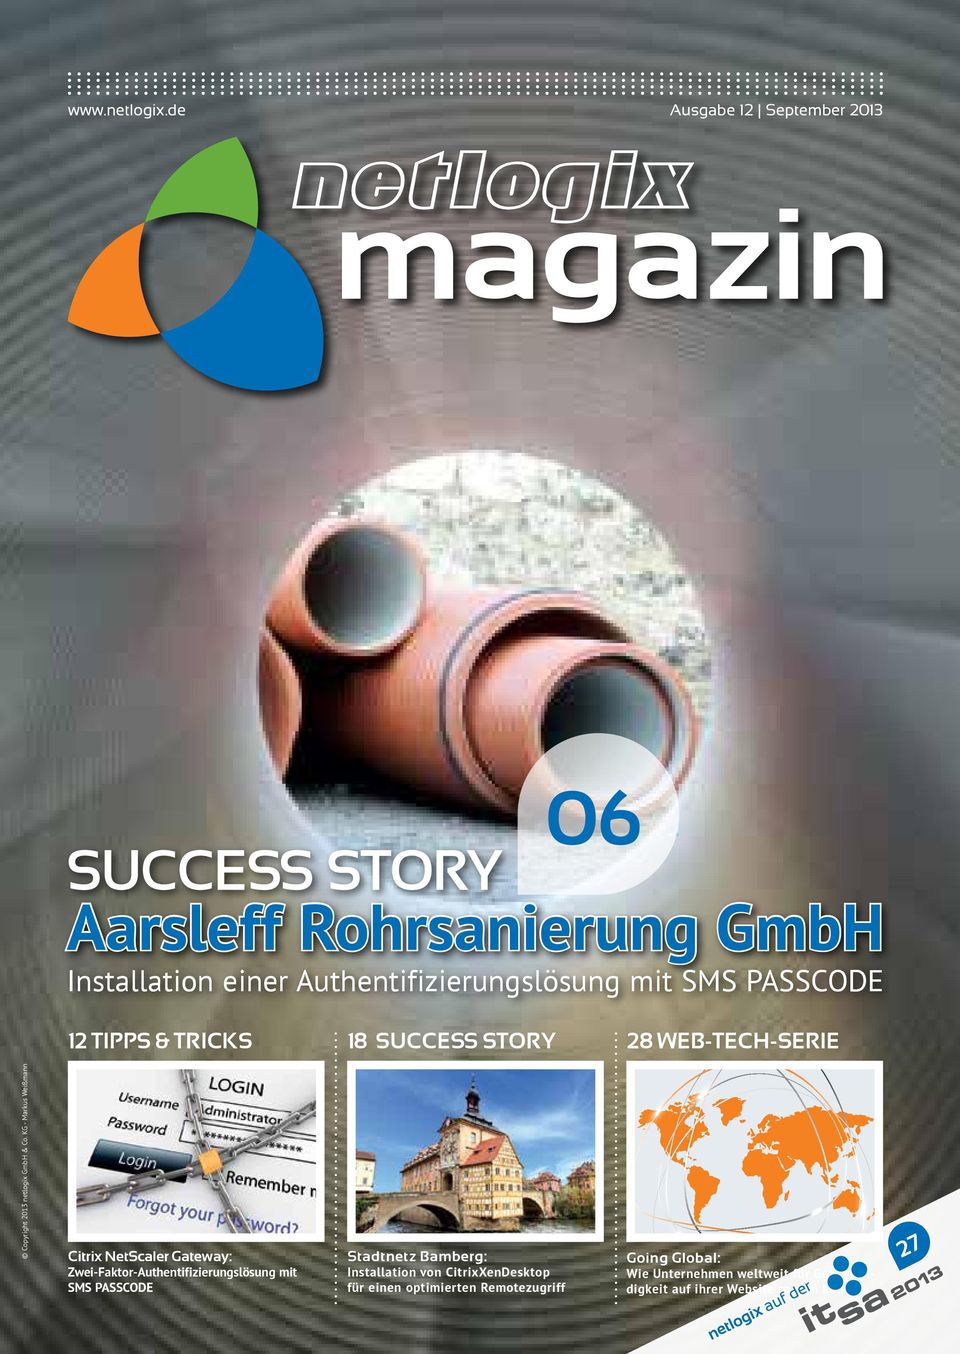 PASSCODE 12 Tipps & Tricks 18 Success Story 28 Web-tech-serie Copyright 2013 netlogix GmbH & Co.